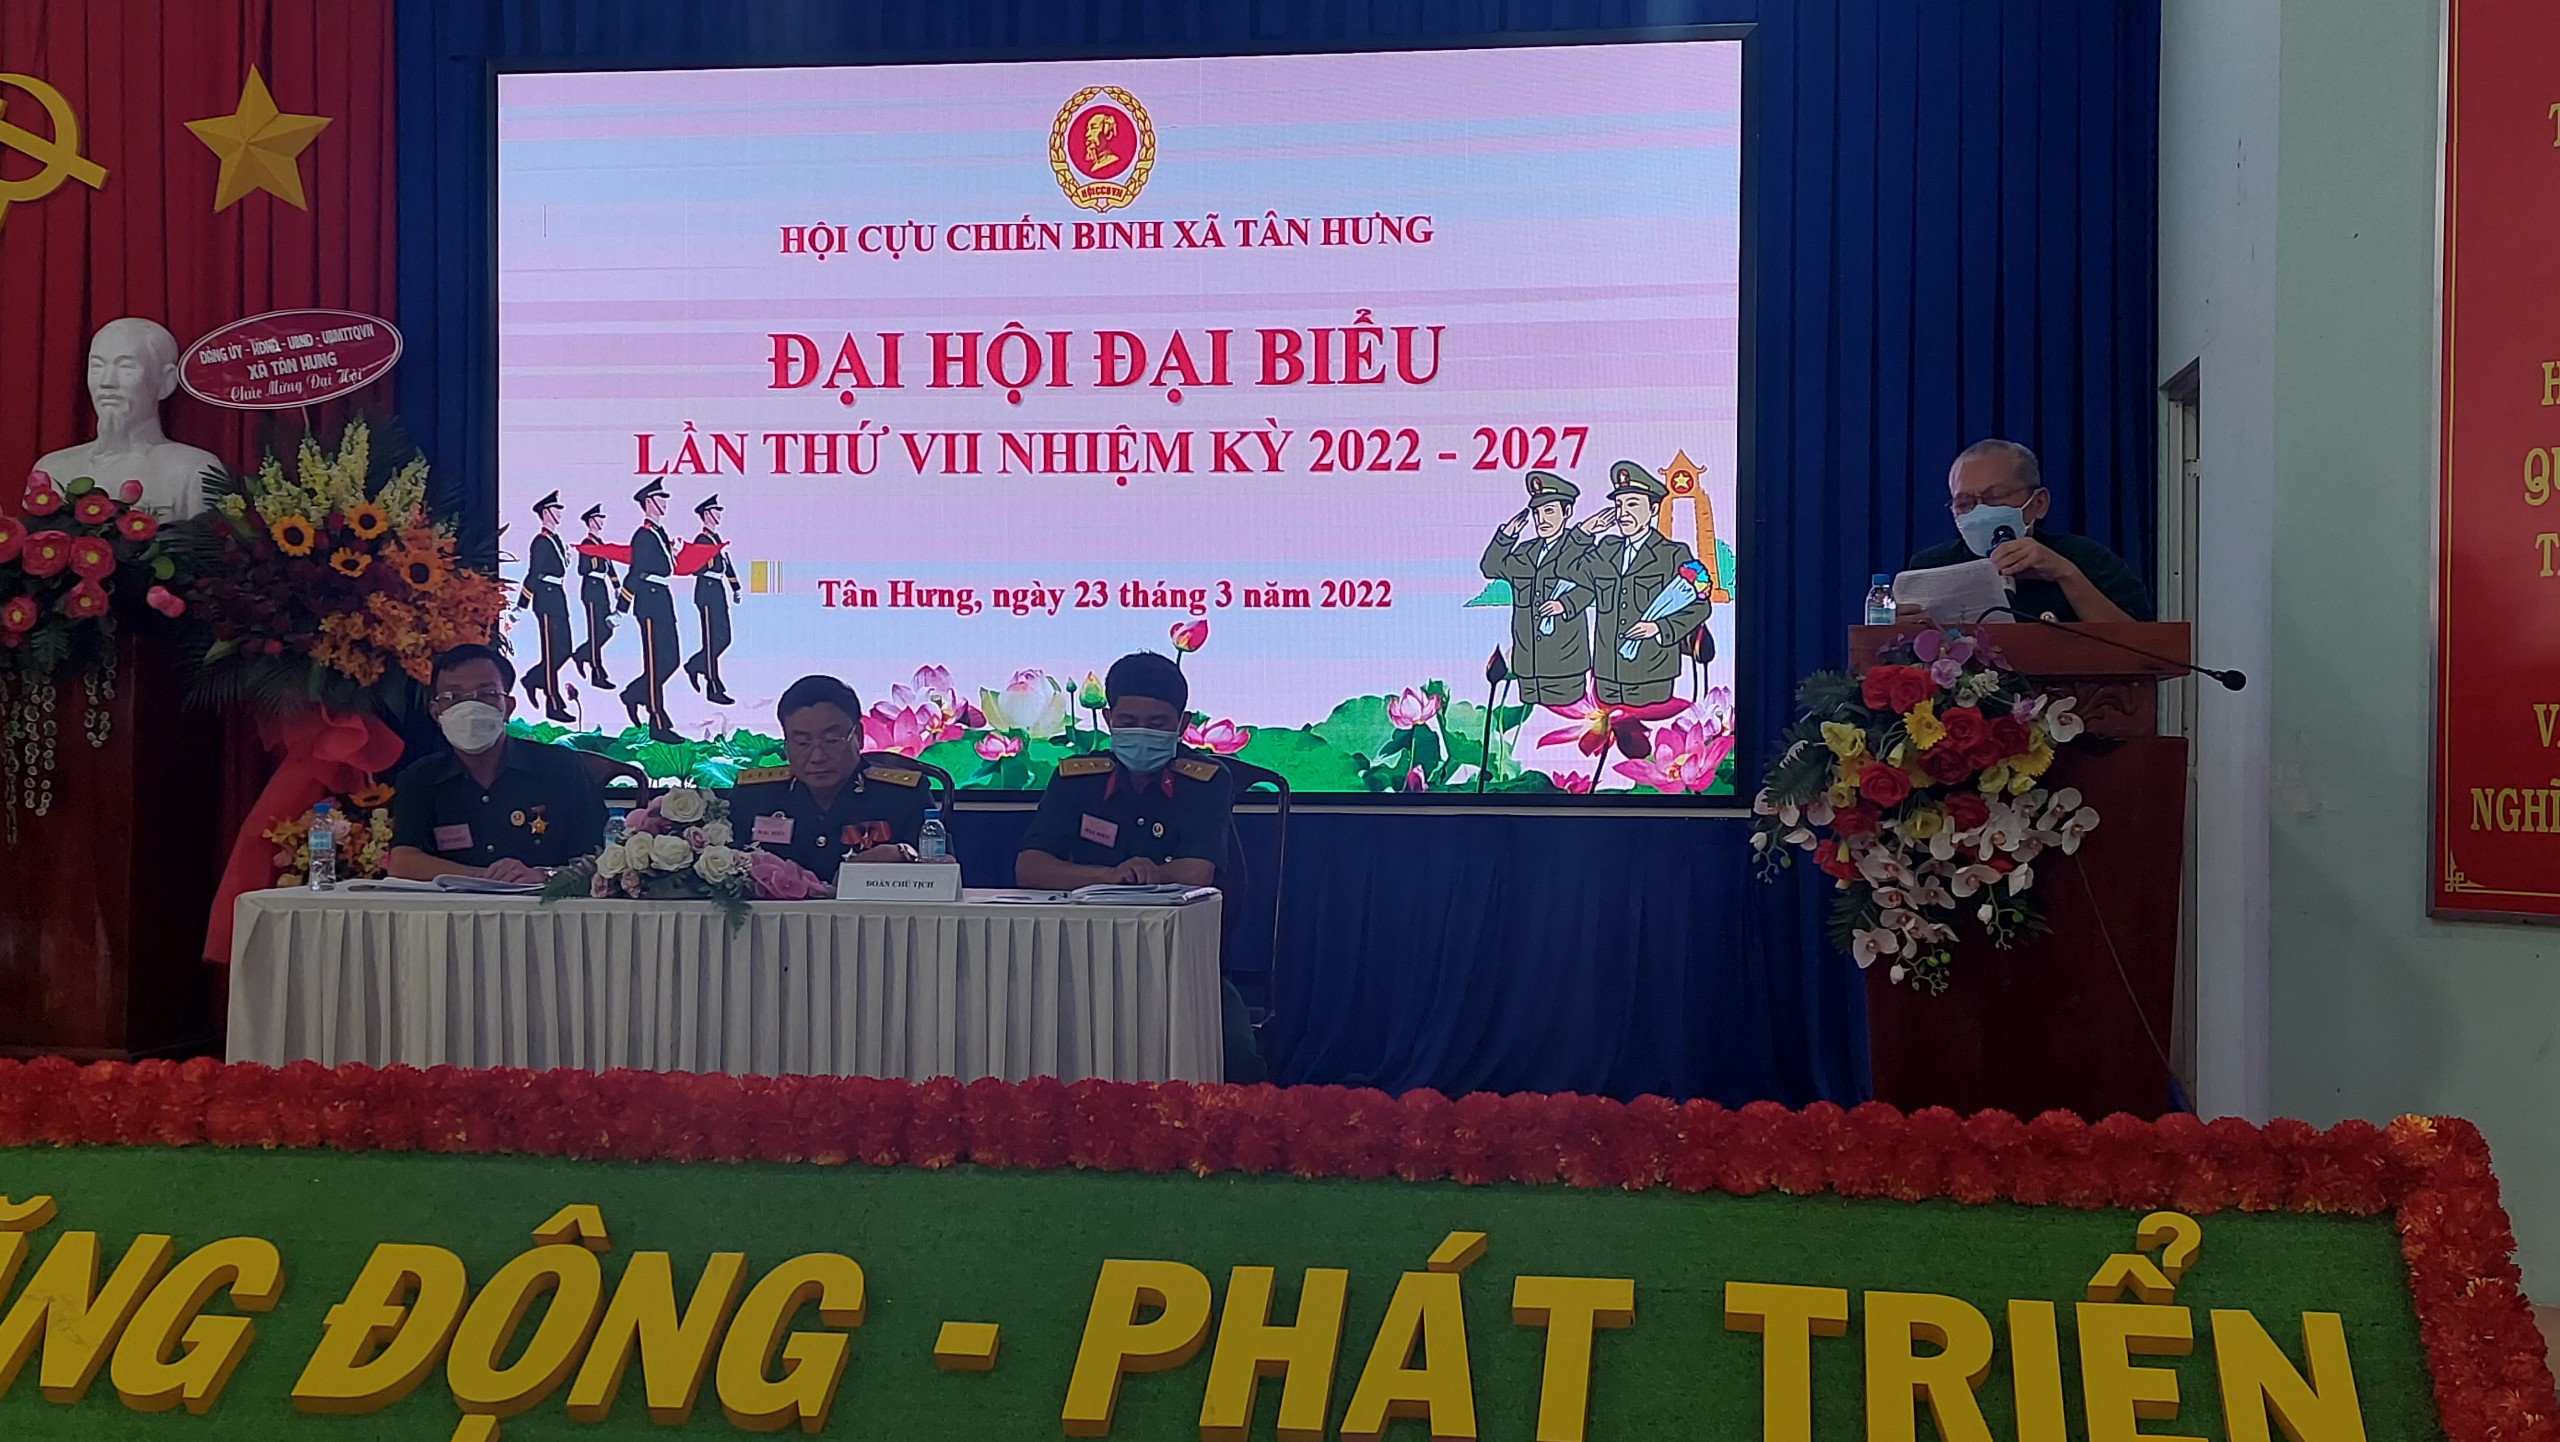 Ngày 23-3 Hội cựu chiến binh xã Tân Hưng đã tổ chức Đại hội lần thứ VII nhiệm kỳ 2022-2027